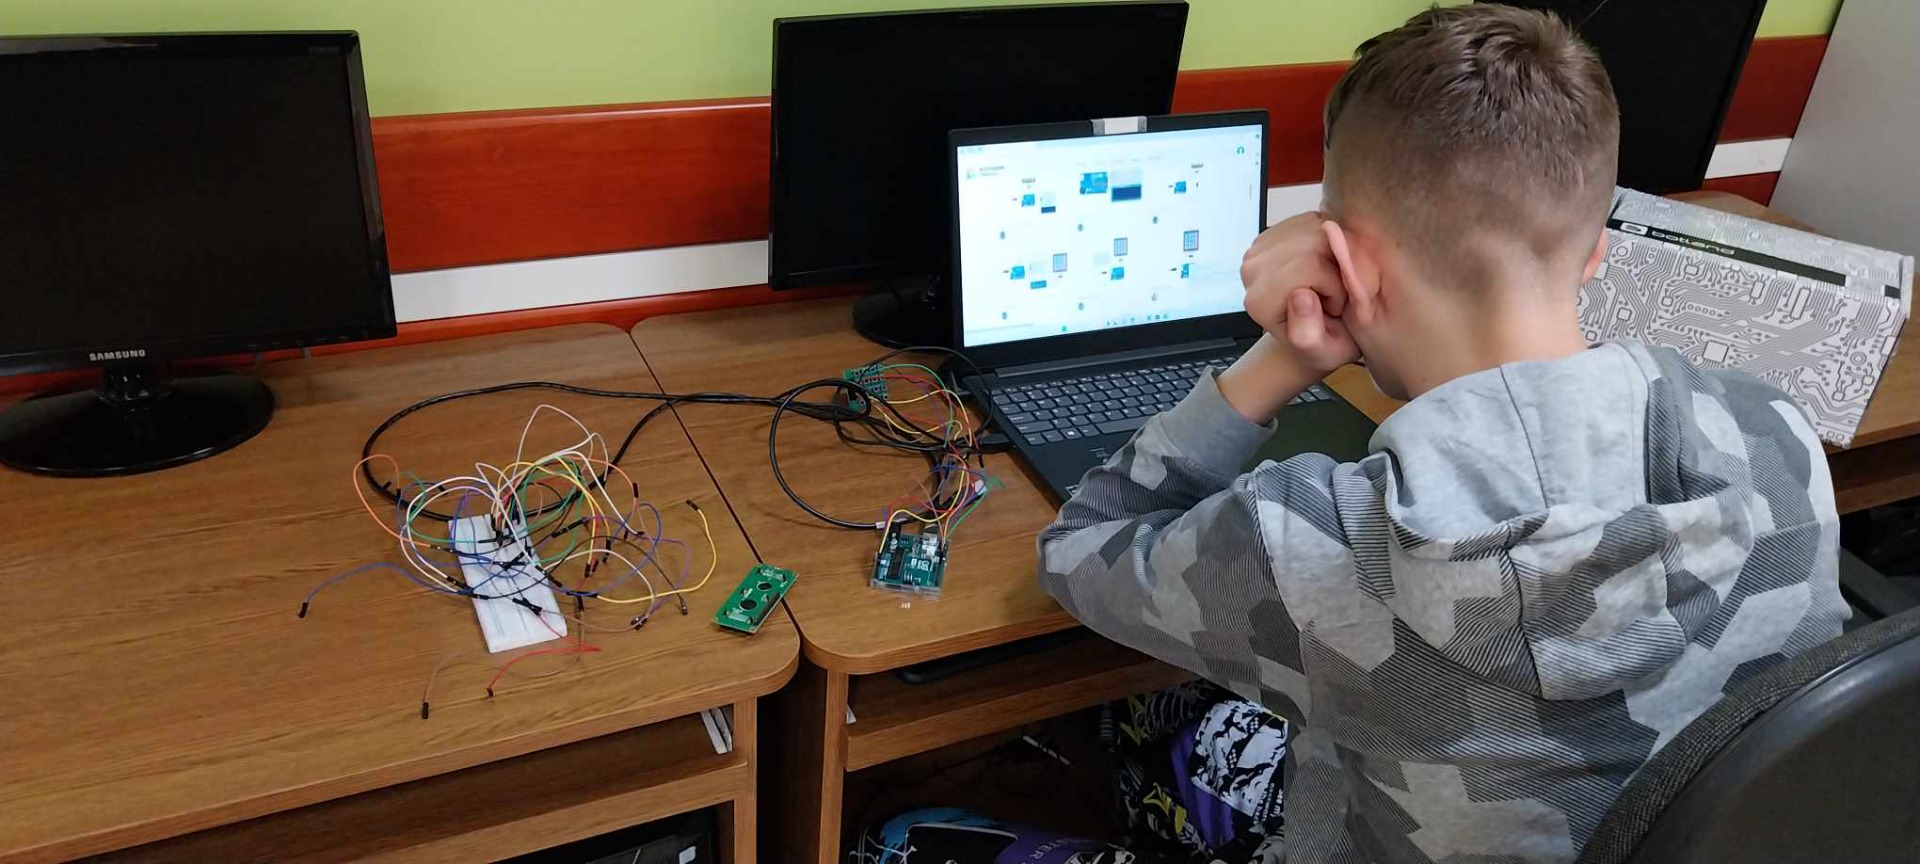 Uczniowie podczas pracy nad projektem interaktywnej klawiatury programowanej w środowisku Arduino.